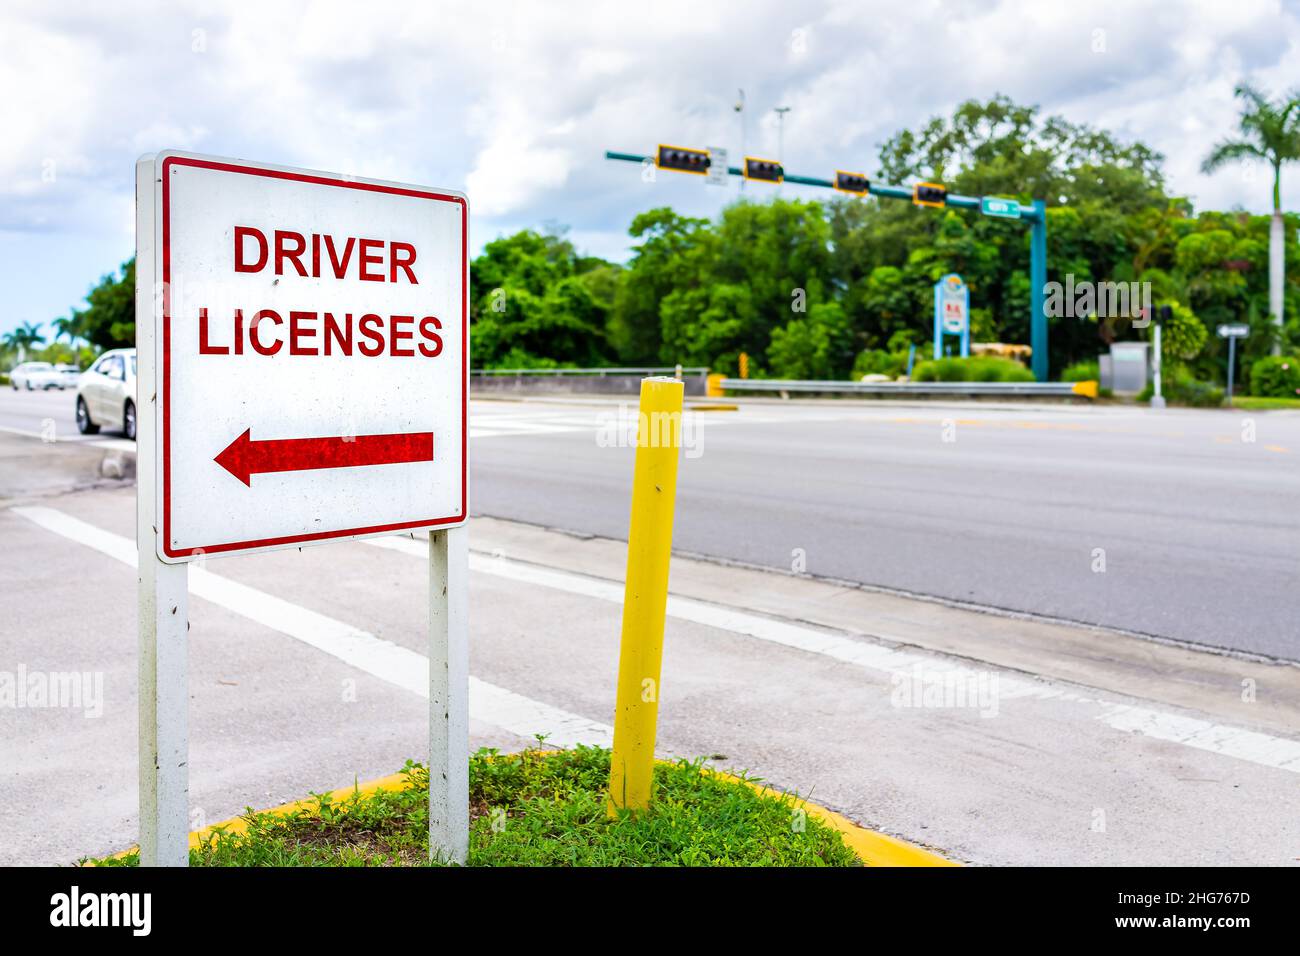 Naples, Florida Downtown Street strada vuota con segnaletica stradale per le indicazioni per l'ufficio patente di guida per rinnovo o per le persone che si sono ricollocate Foto Stock